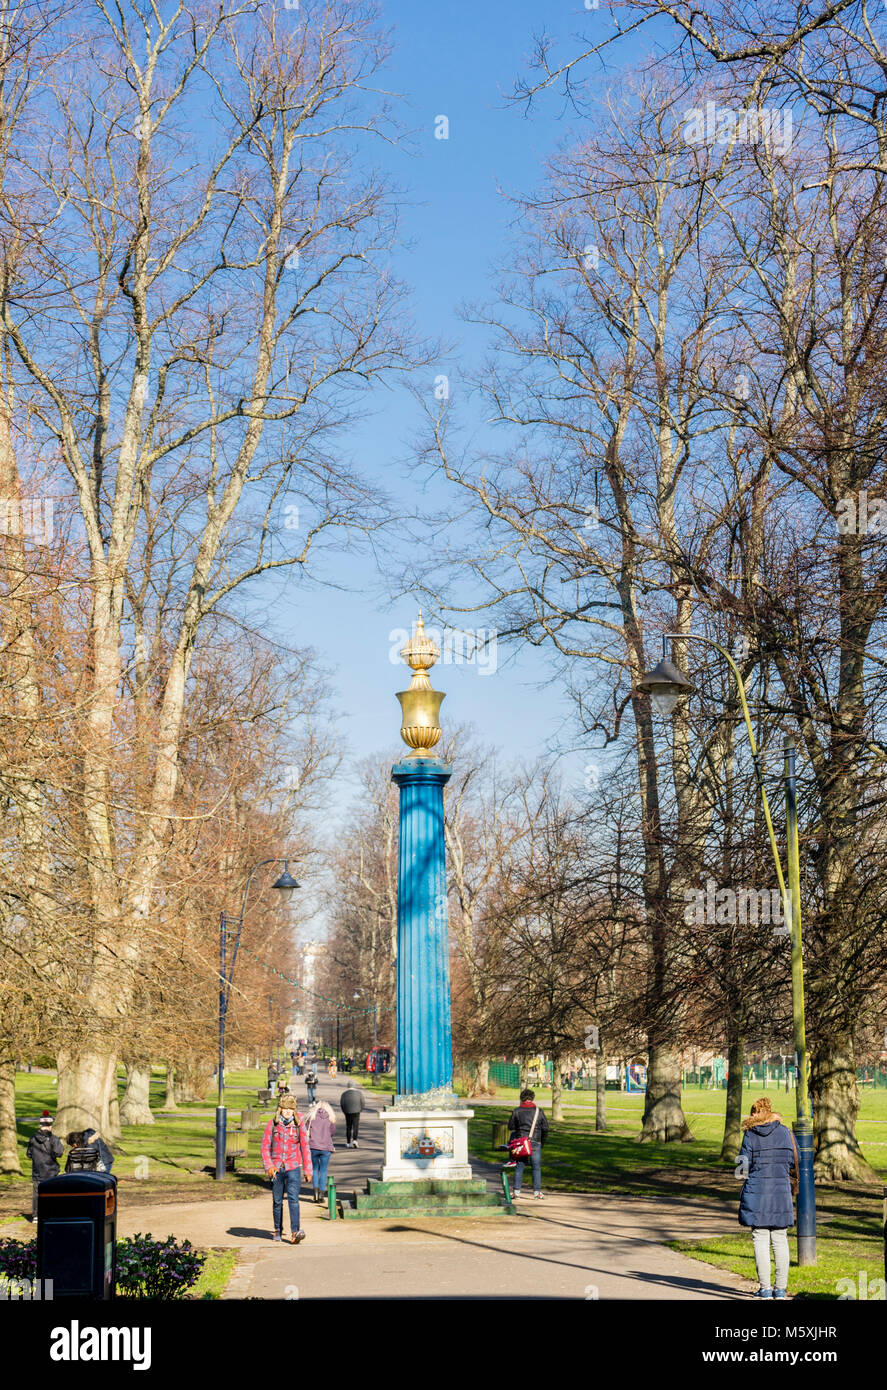 La colonna di gas - una colonna dorico di fusione in ghisa - presso l'entrata al Parco Houndwell su una soleggiata giornata invernale in Southampton, England, Regno Unito Foto Stock